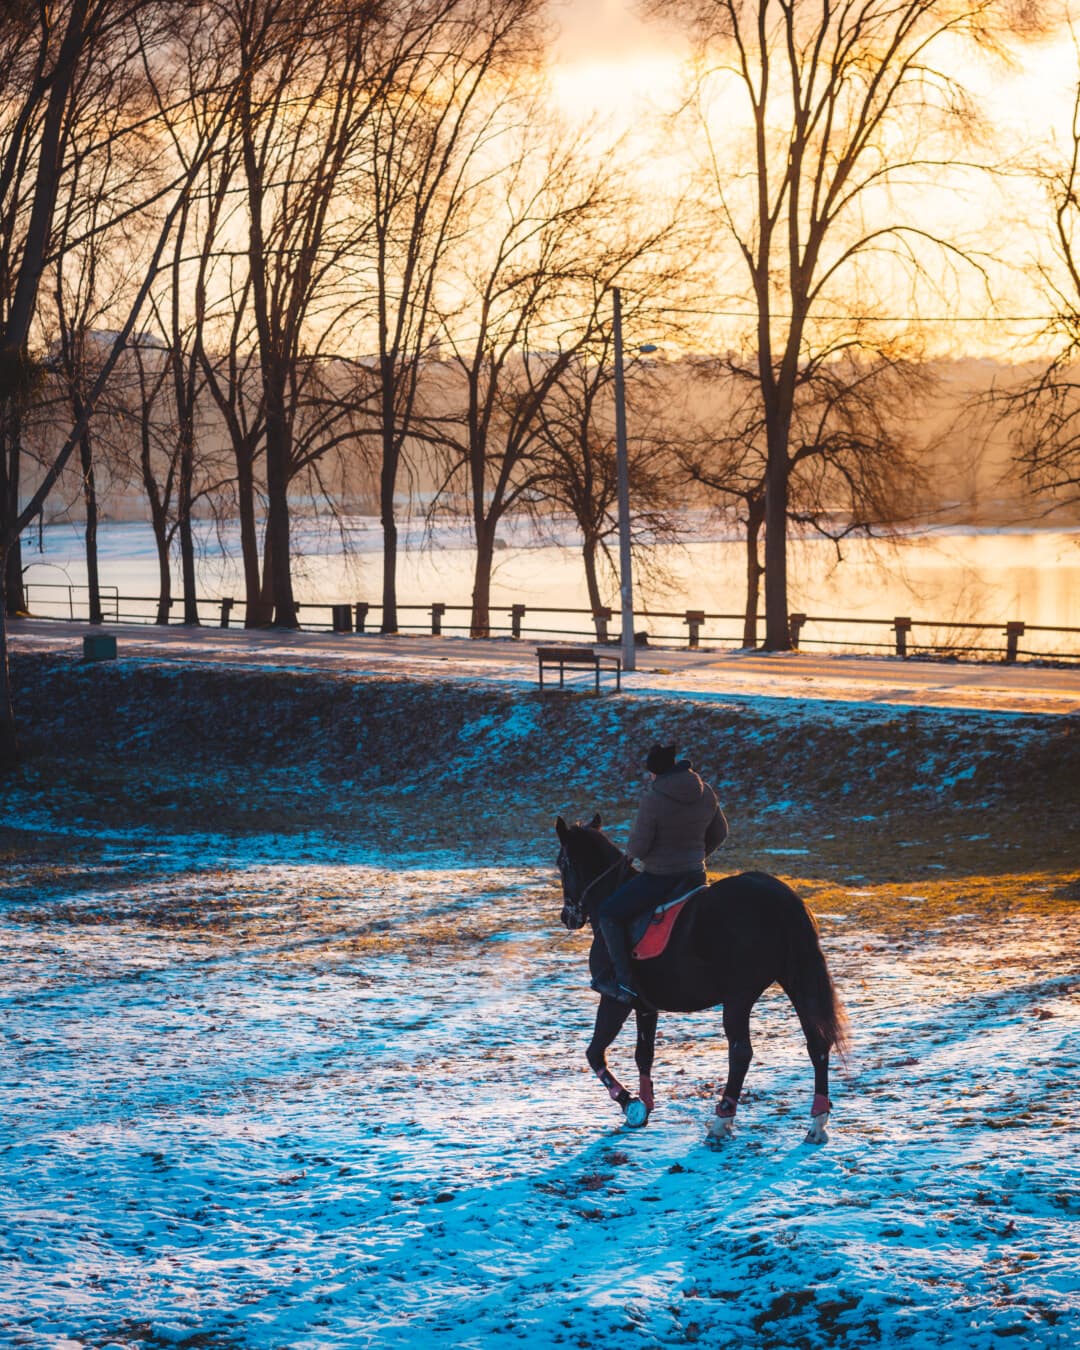 naplemente, lovas, ló, hó, téli, beszűrődik, szabadban, nap, szabadidő, Hajnal